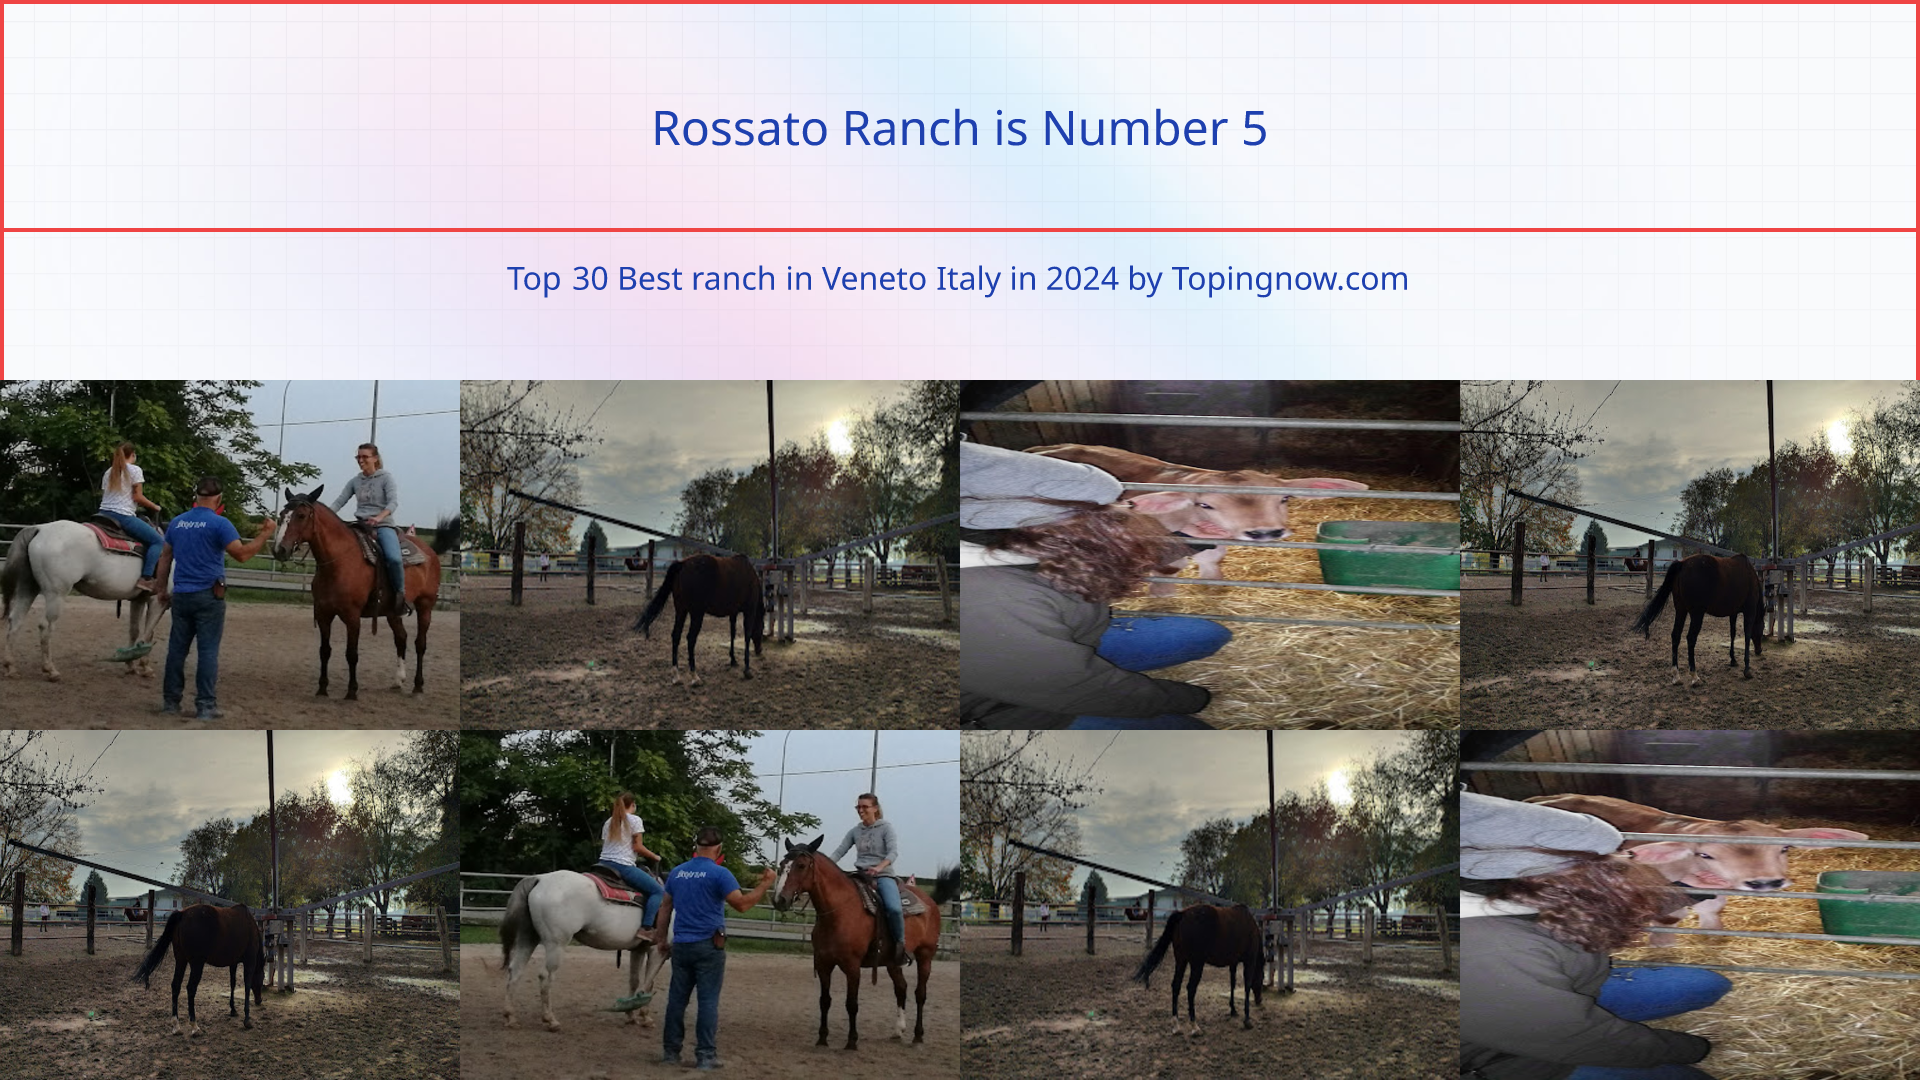 Rossato Ranch: Top 30 Best ranch in Veneto Italy in 2024